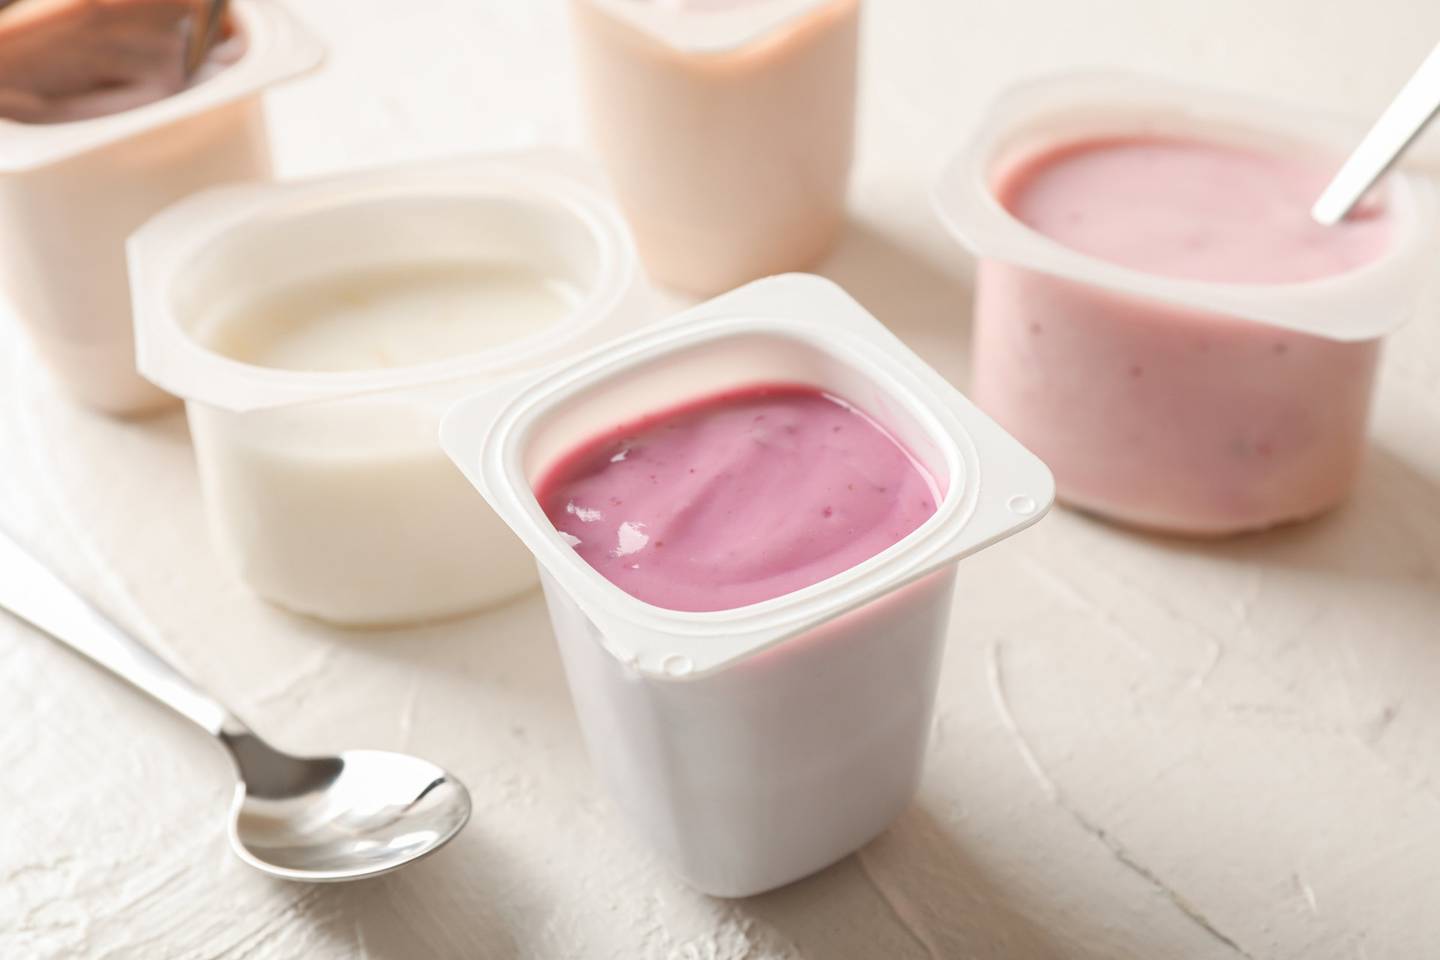 风味酸奶是一种超加工食品。 图/123RF